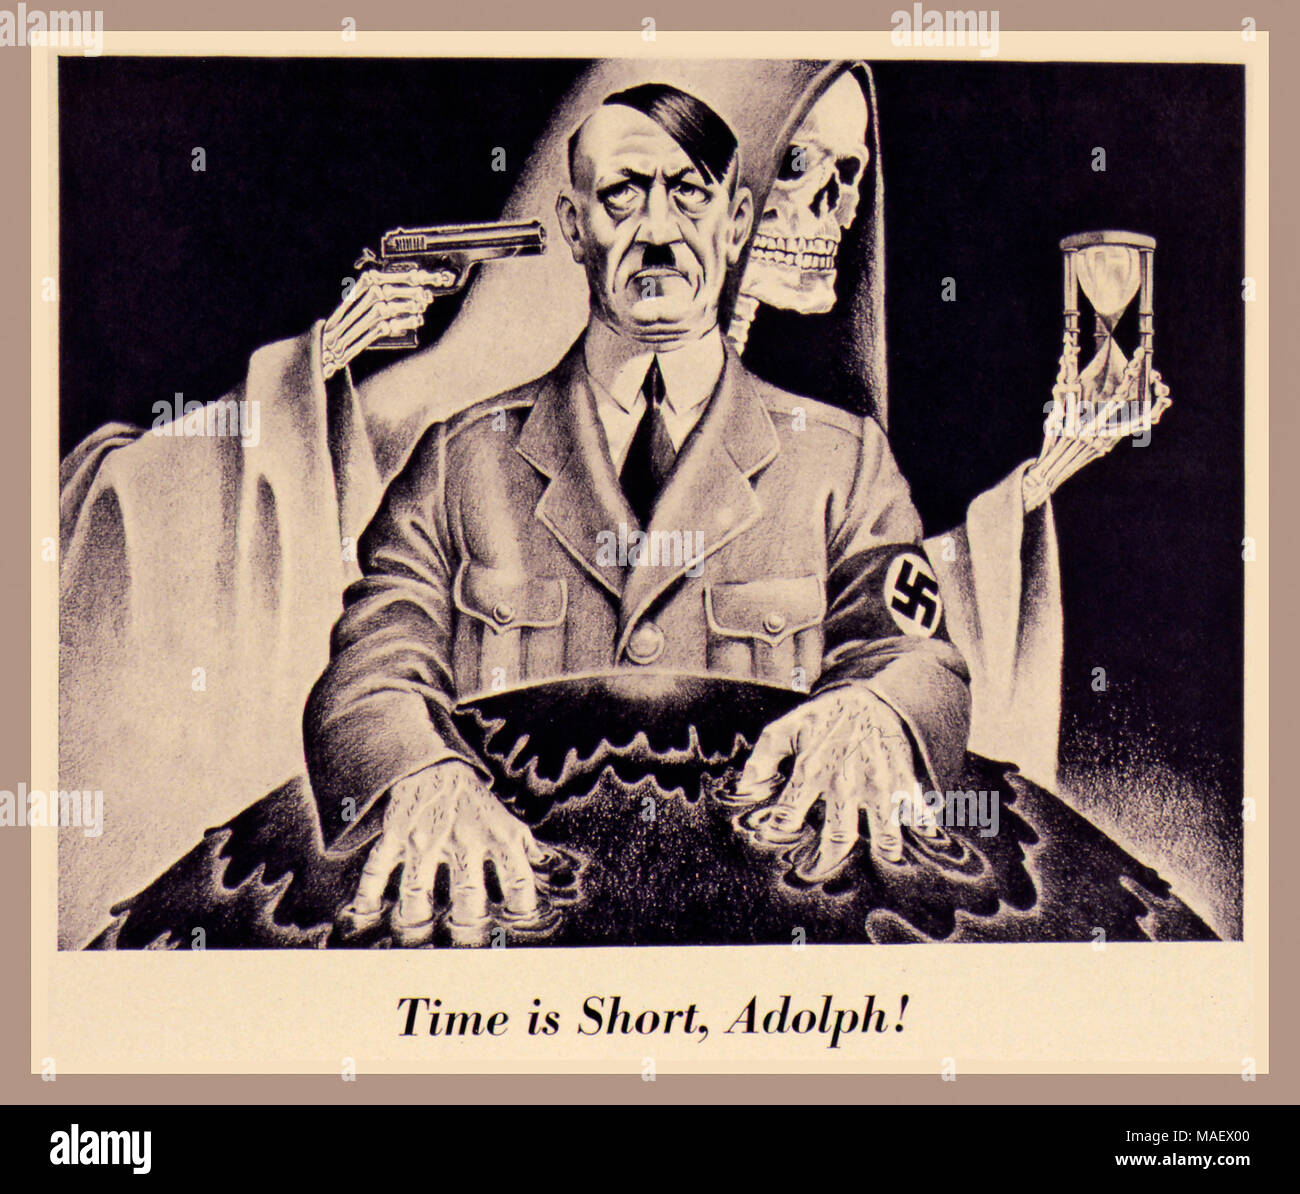 Jahrgang britische Alliierte Propaganda WW2 Propagandaplakat von Adolf Hitler mit dem Sensenmann warten...." Zeit ist kurz, Adolph!" ca. 1942-1943 Stockfoto